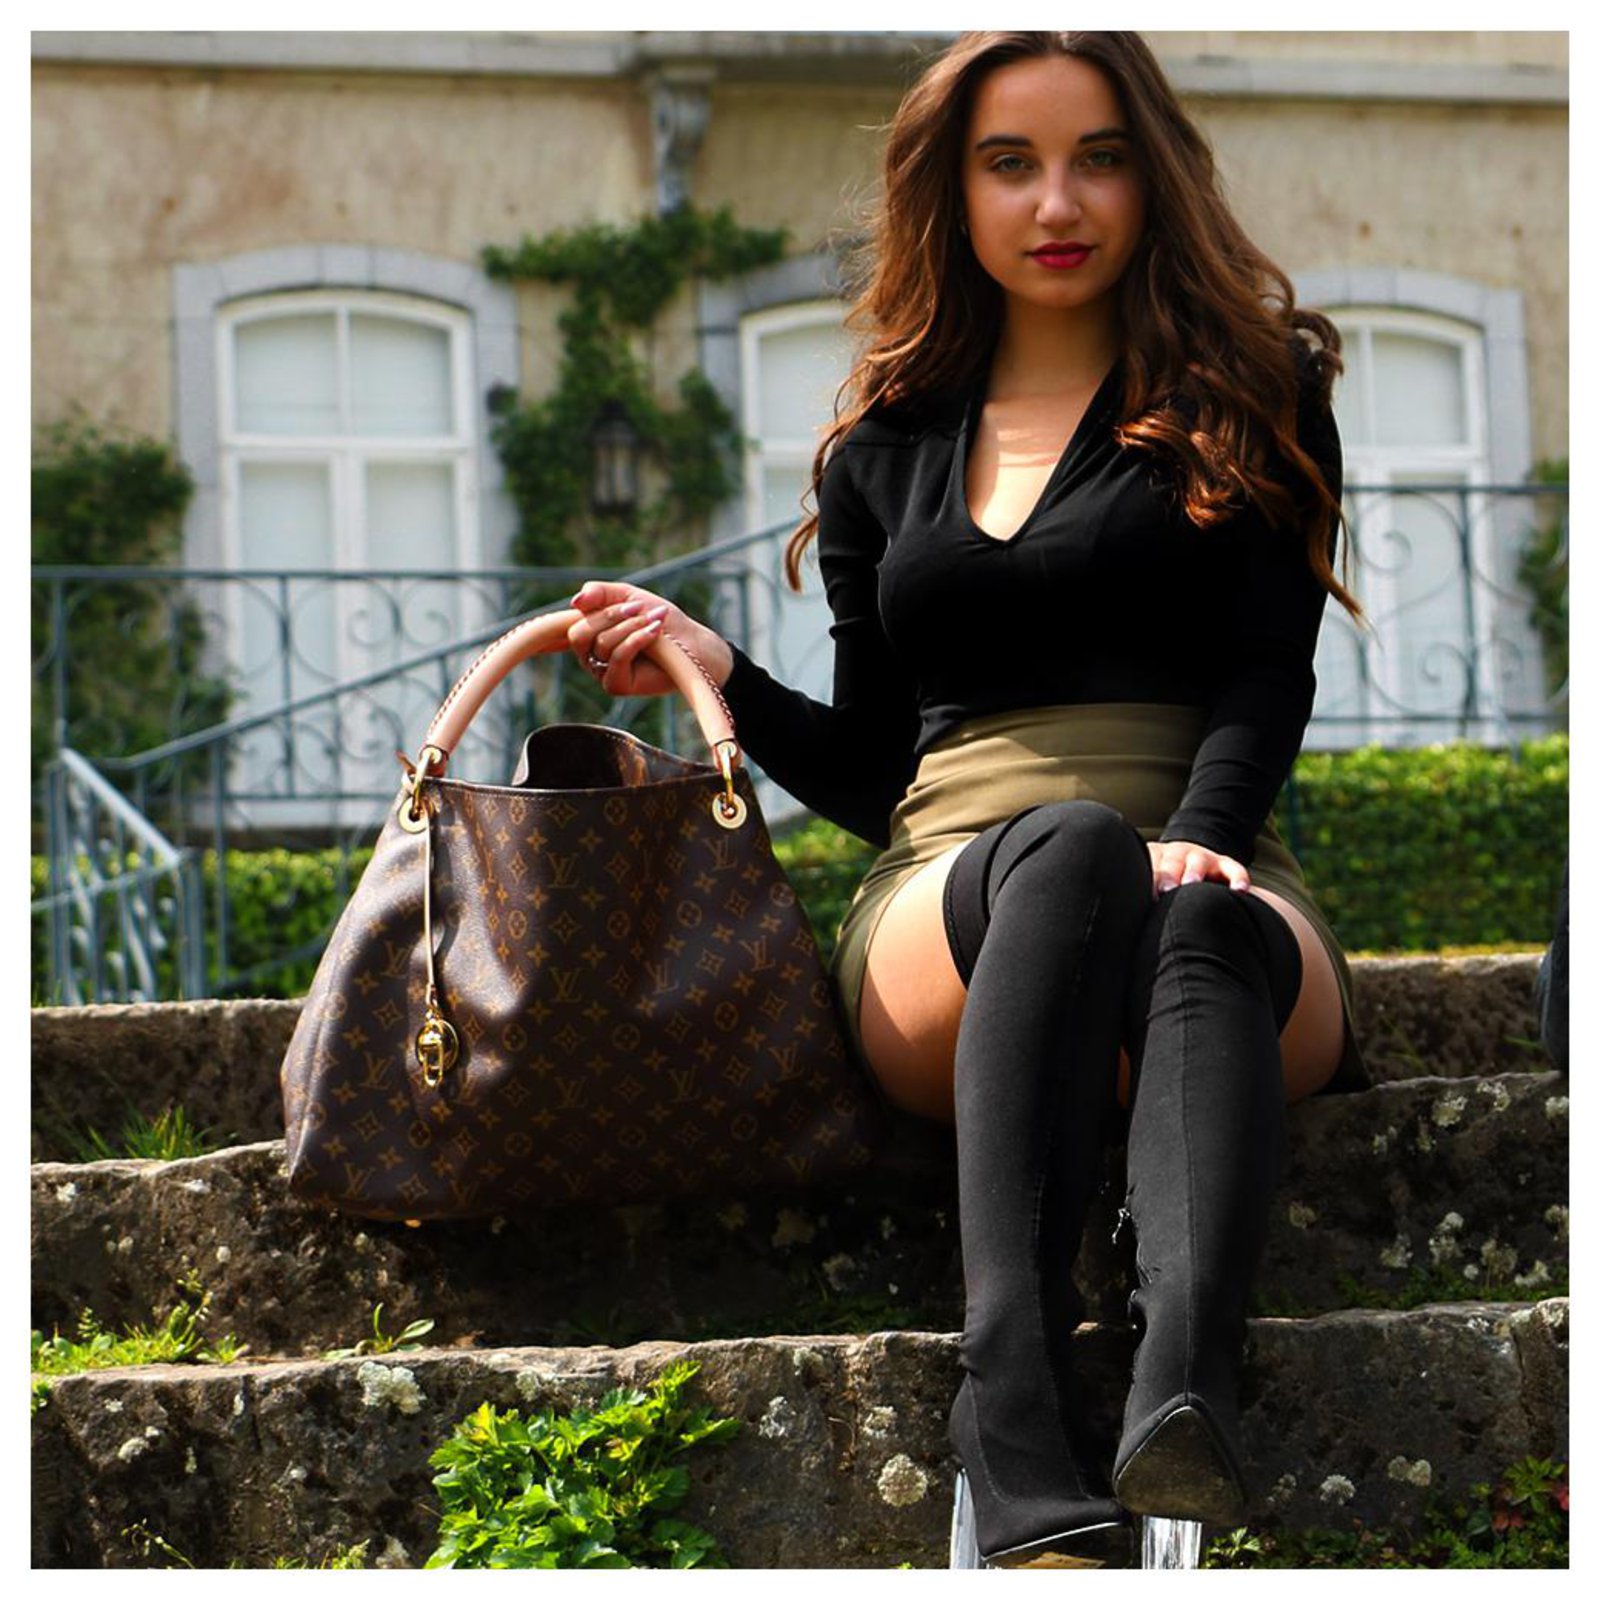 Artsy cloth handbag Louis Vuitton Brown in Cloth - 24970086